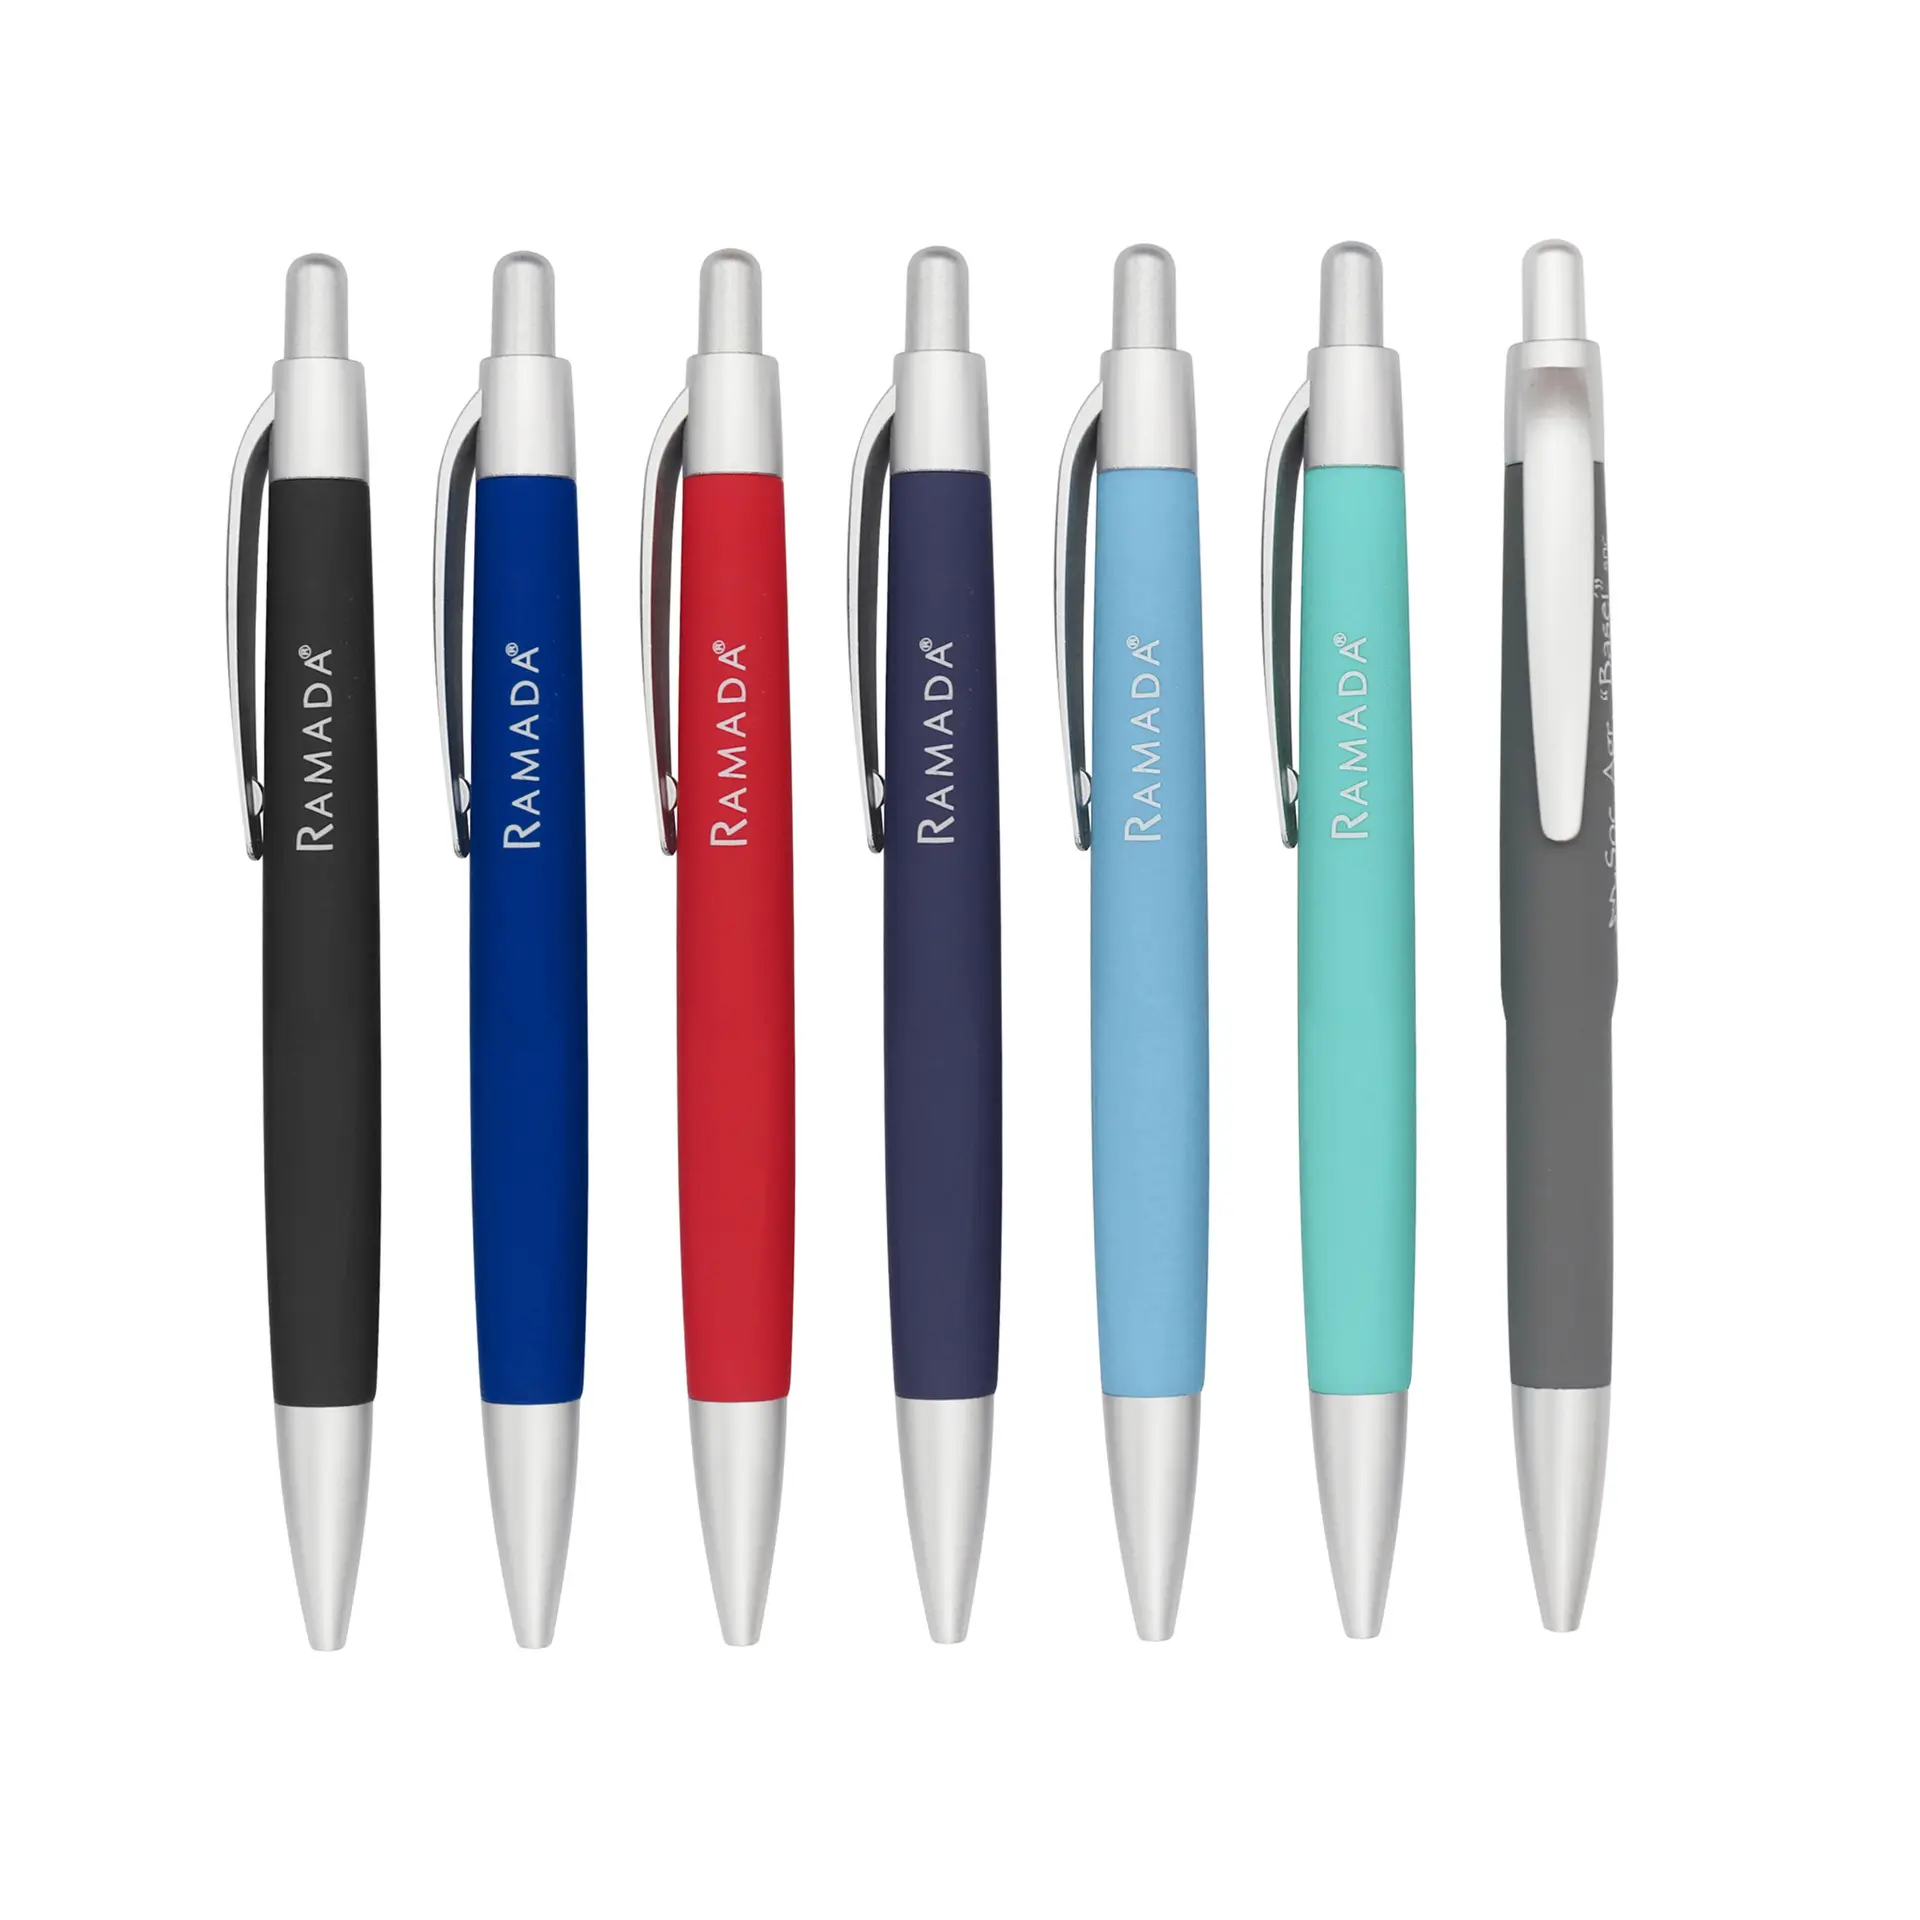 ปากกาพลาสติกเคลือบยางแบบนิ่มพร้อมโลโก้ออกแบบได้ตามต้องการ